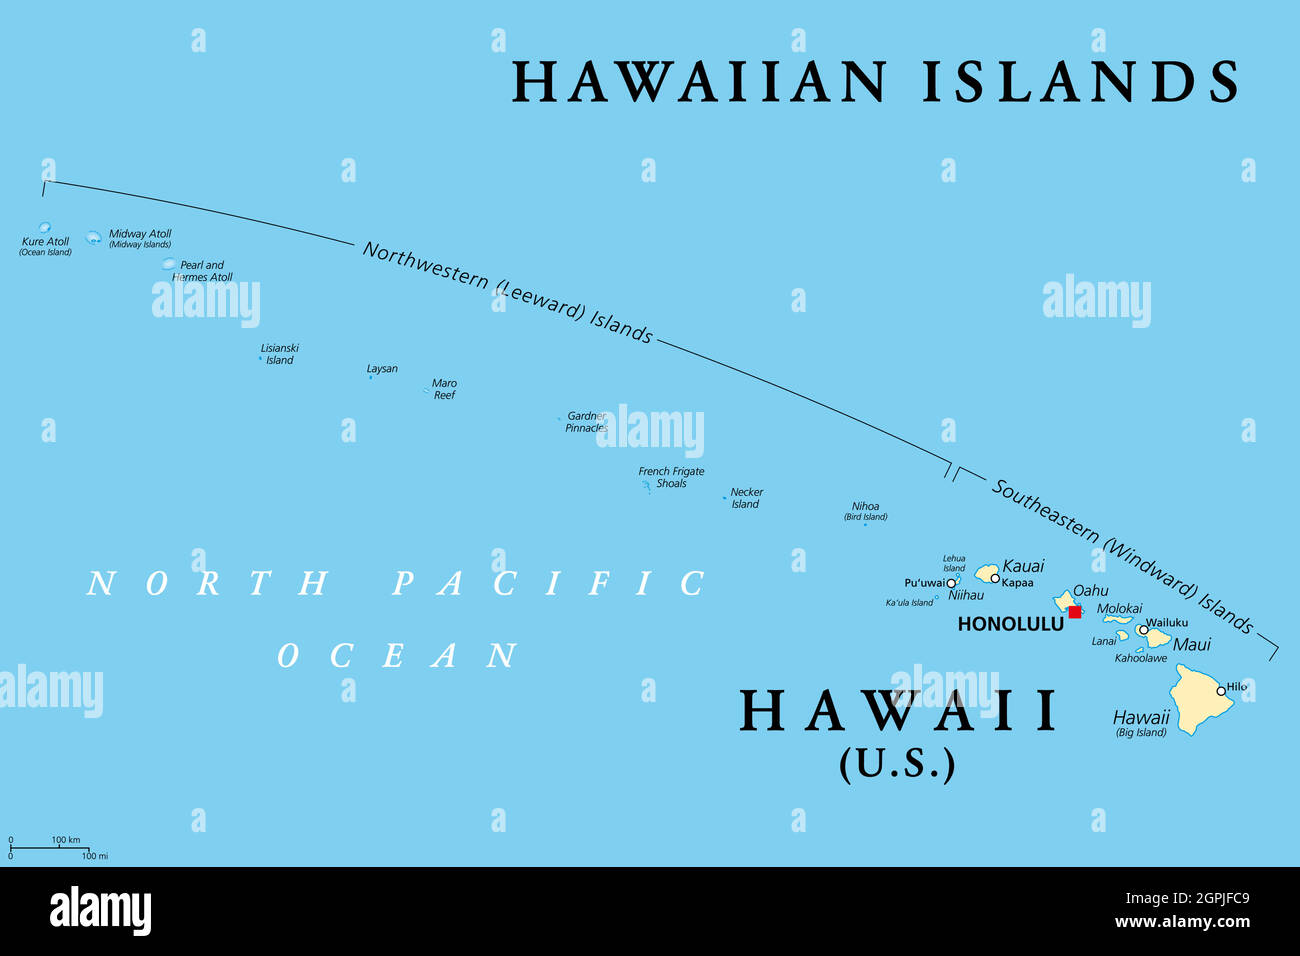 Hawaii-Inseln, politische Karte, der Staat Hawaii und Midway Island Stock Vektor